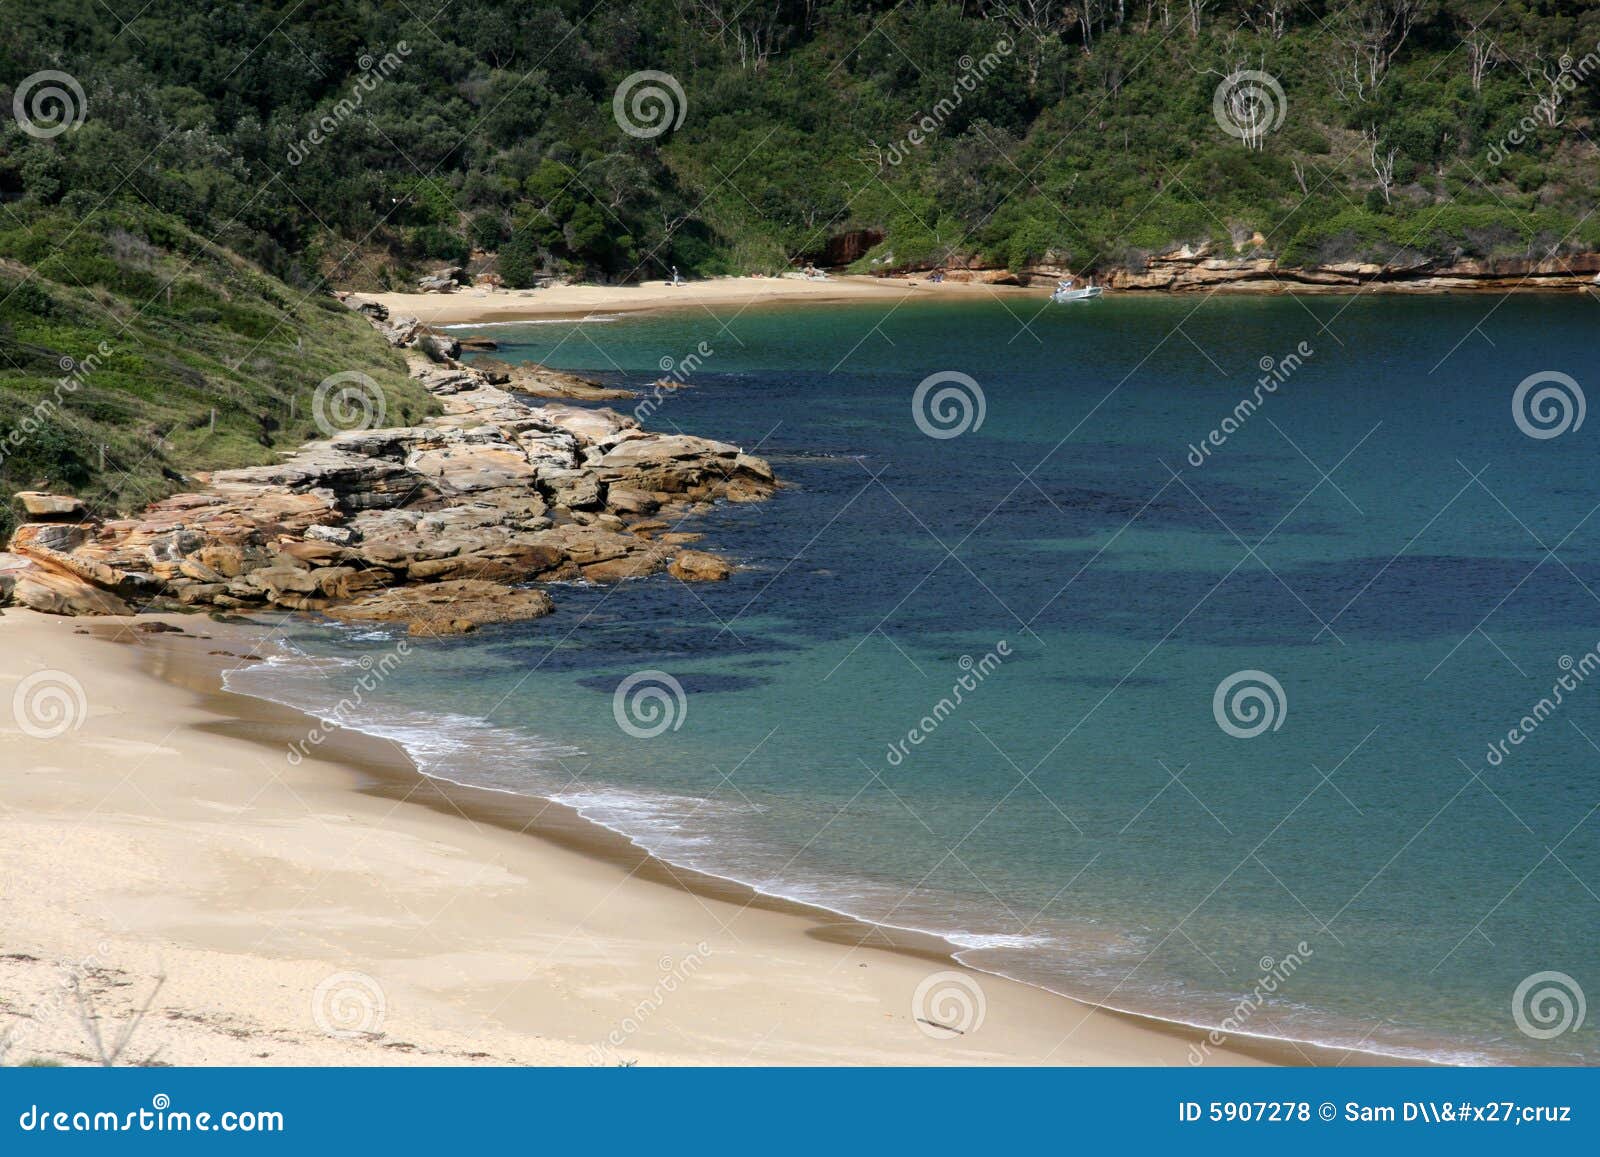 sandy beach - botany bay, sydney, australia